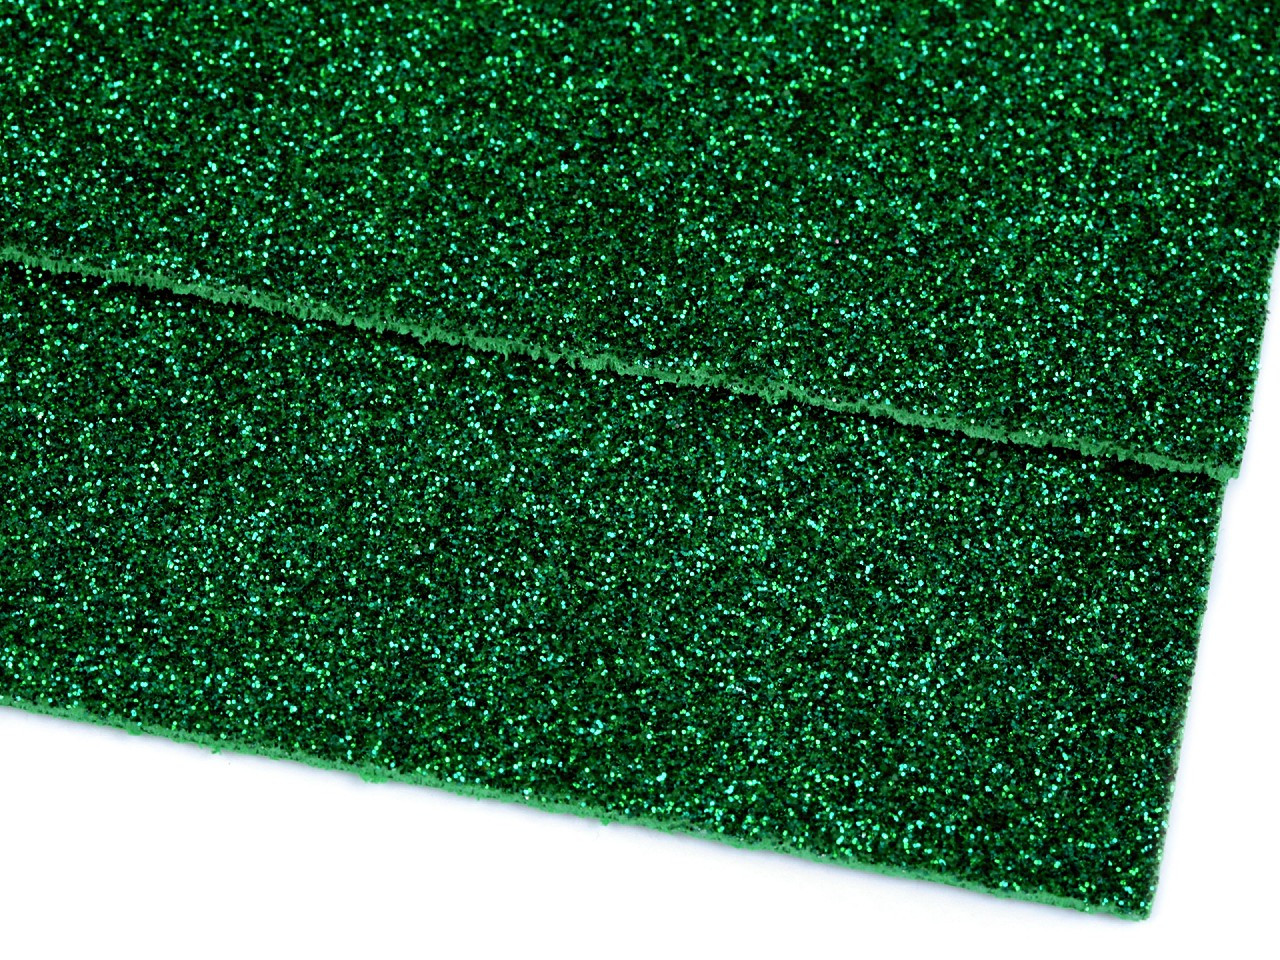 Pěnová guma Moosgummi s glitry 20x30 cm, barva 11 zelená vánoční